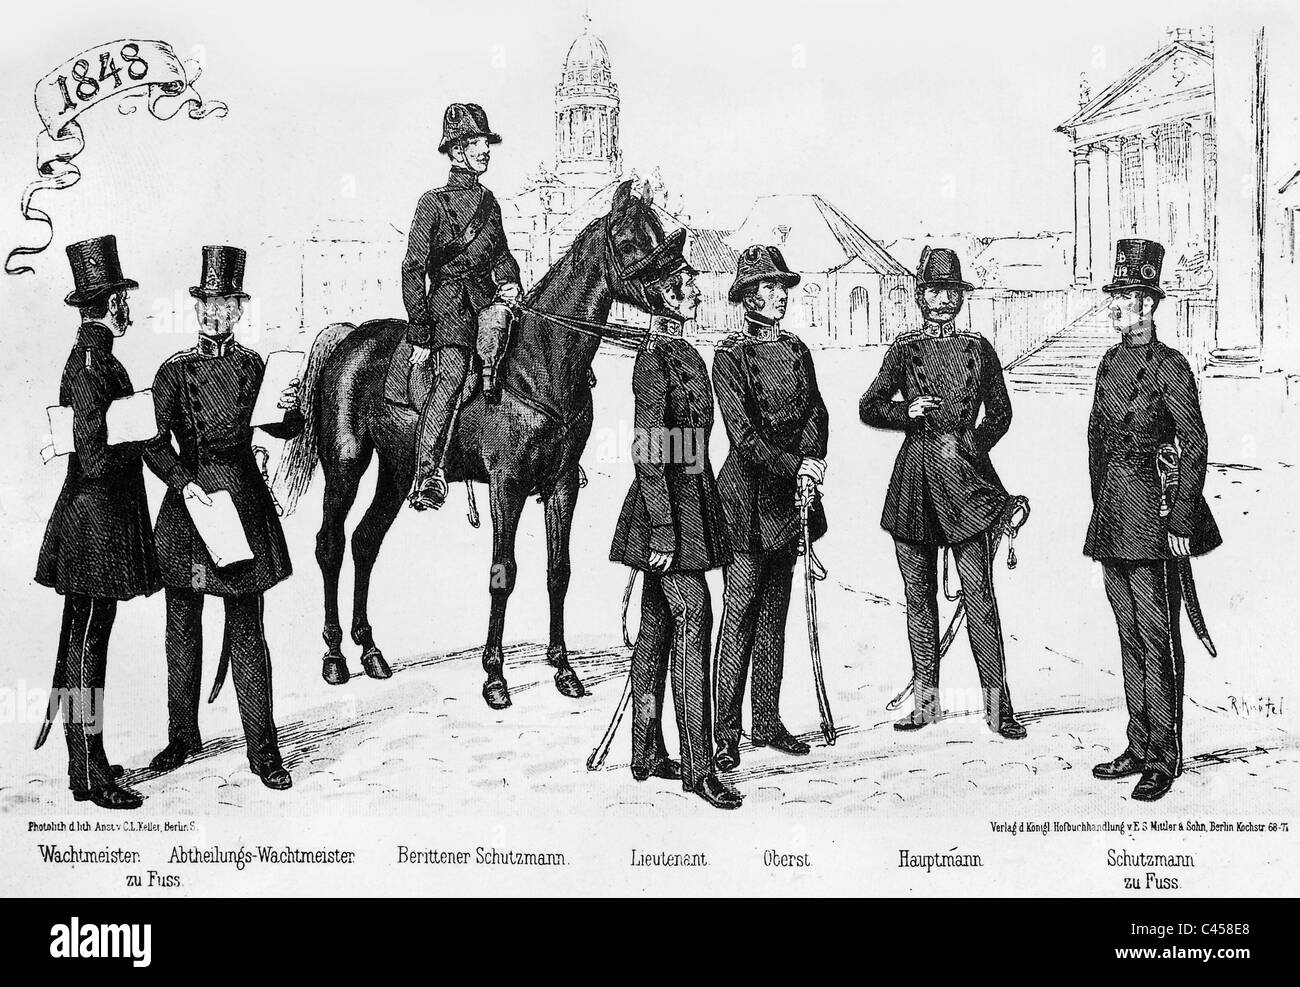 Berlin police, 1848 Stock Photo